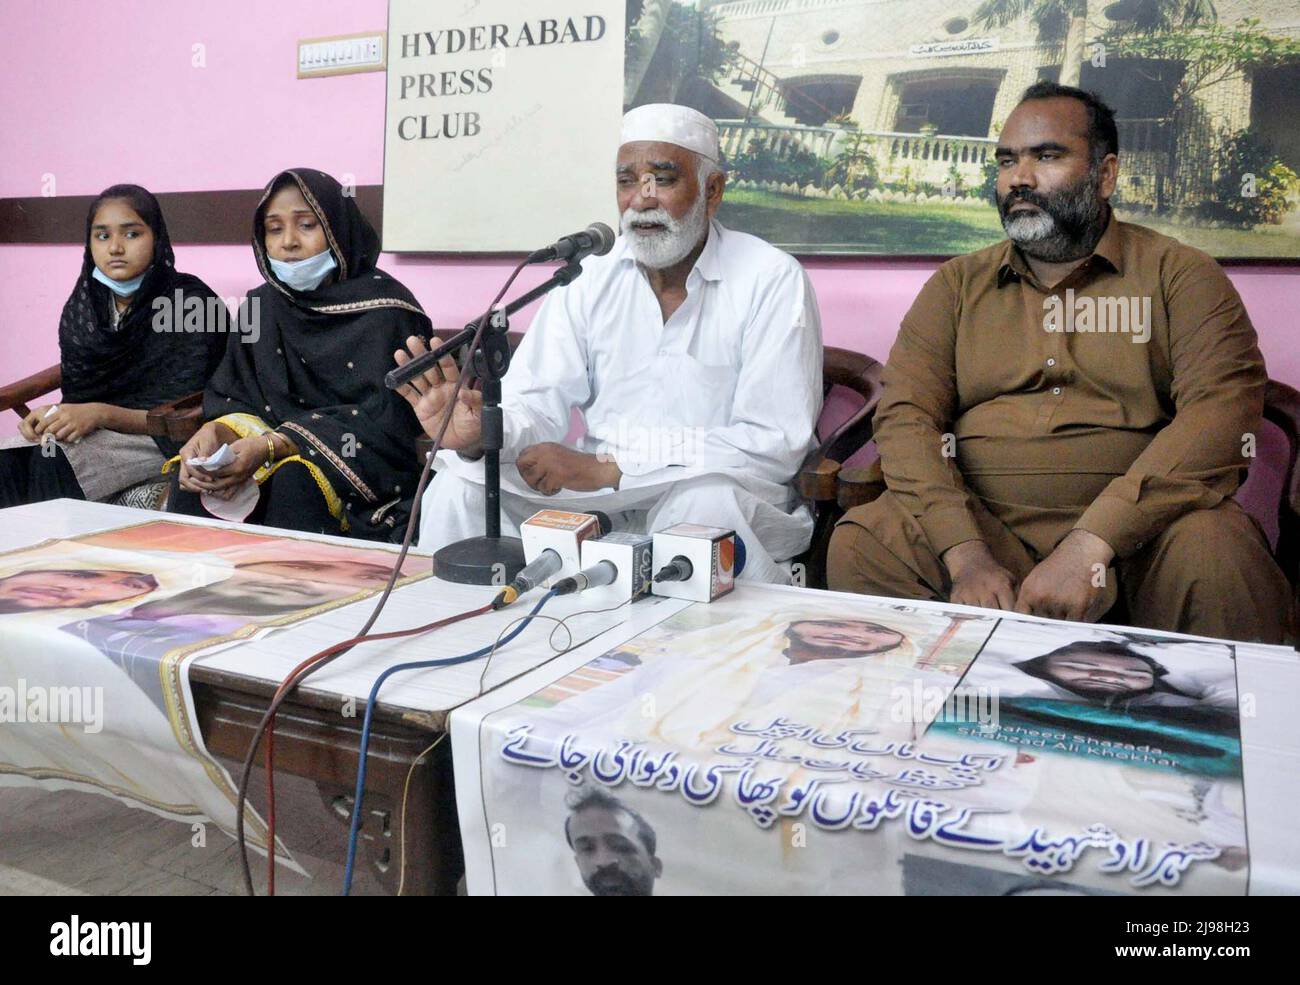 I residenti di Hali Road stanno organizzando una conferenza stampa contro l'alta impotenza di influente poliziotto, presso il press club di Hyderabad sabato 21 maggio 2022. Foto Stock